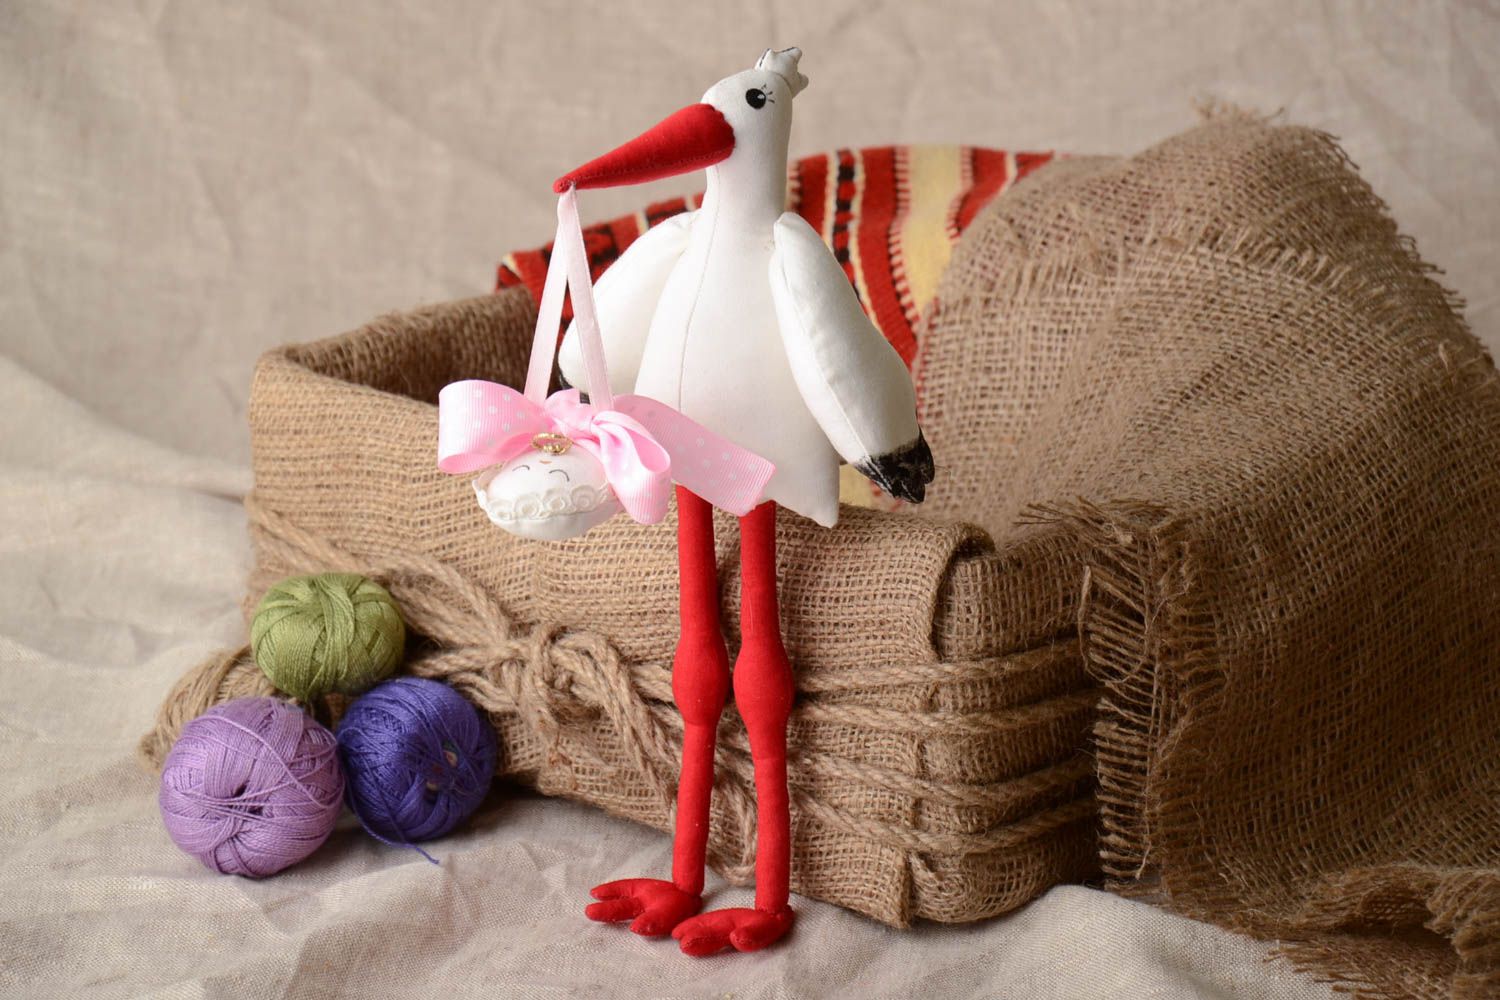 Textil Kuscheltier Storch mit Baby aus Nesselstoff handmade Geschenk für Eltern foto 1